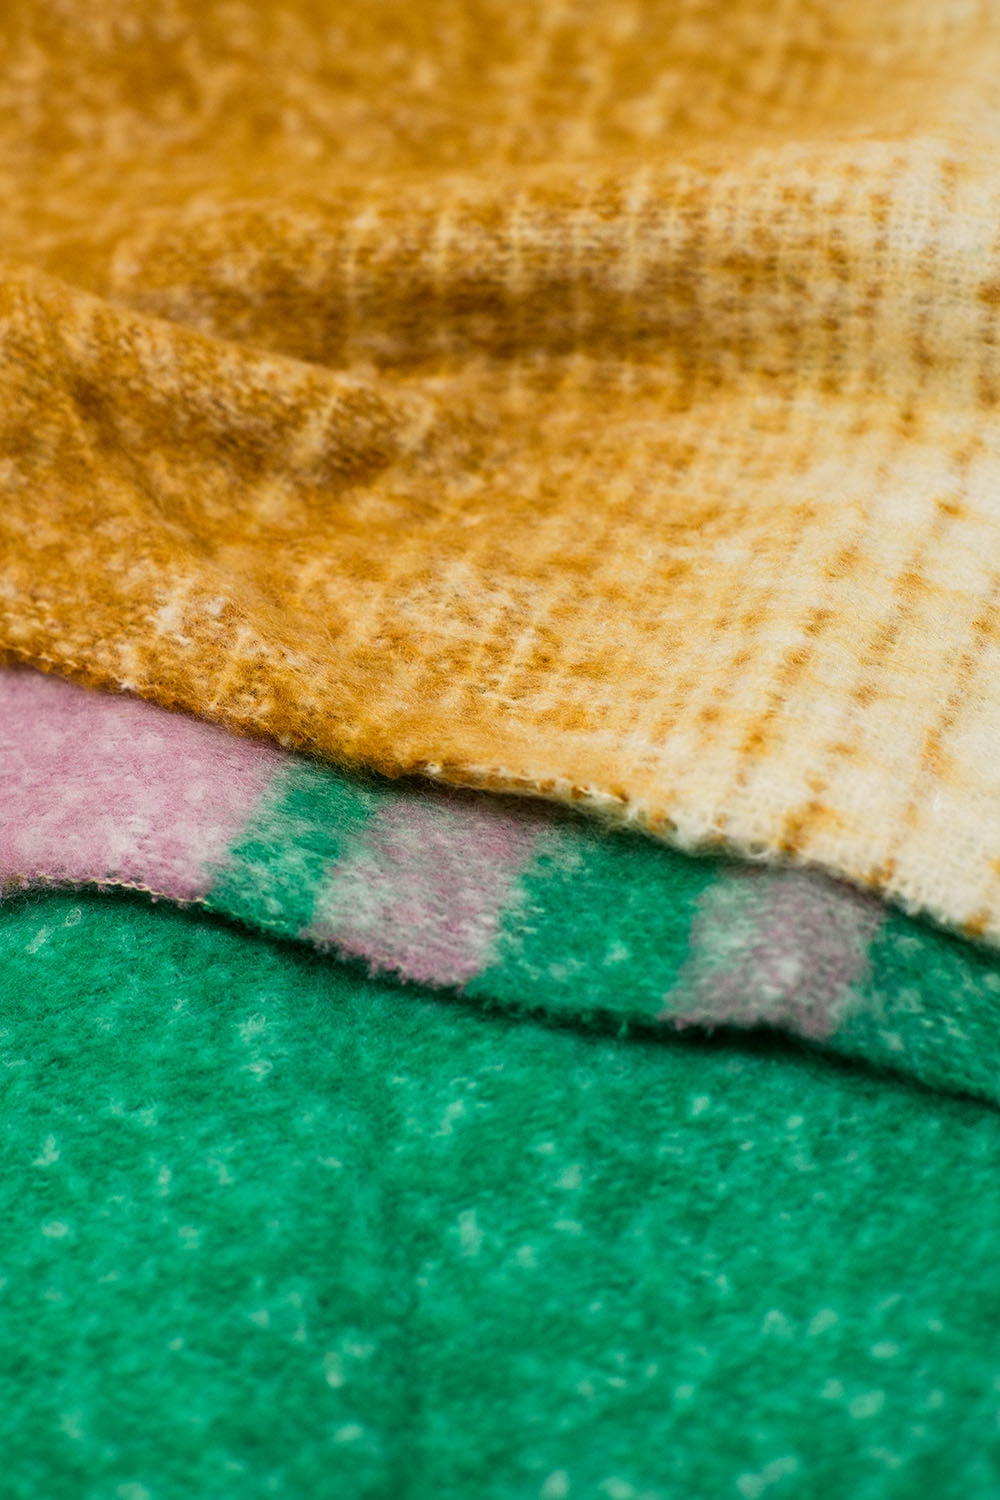 Bufanda de punto grueso multicolor con rayas multicolores, verde y azul